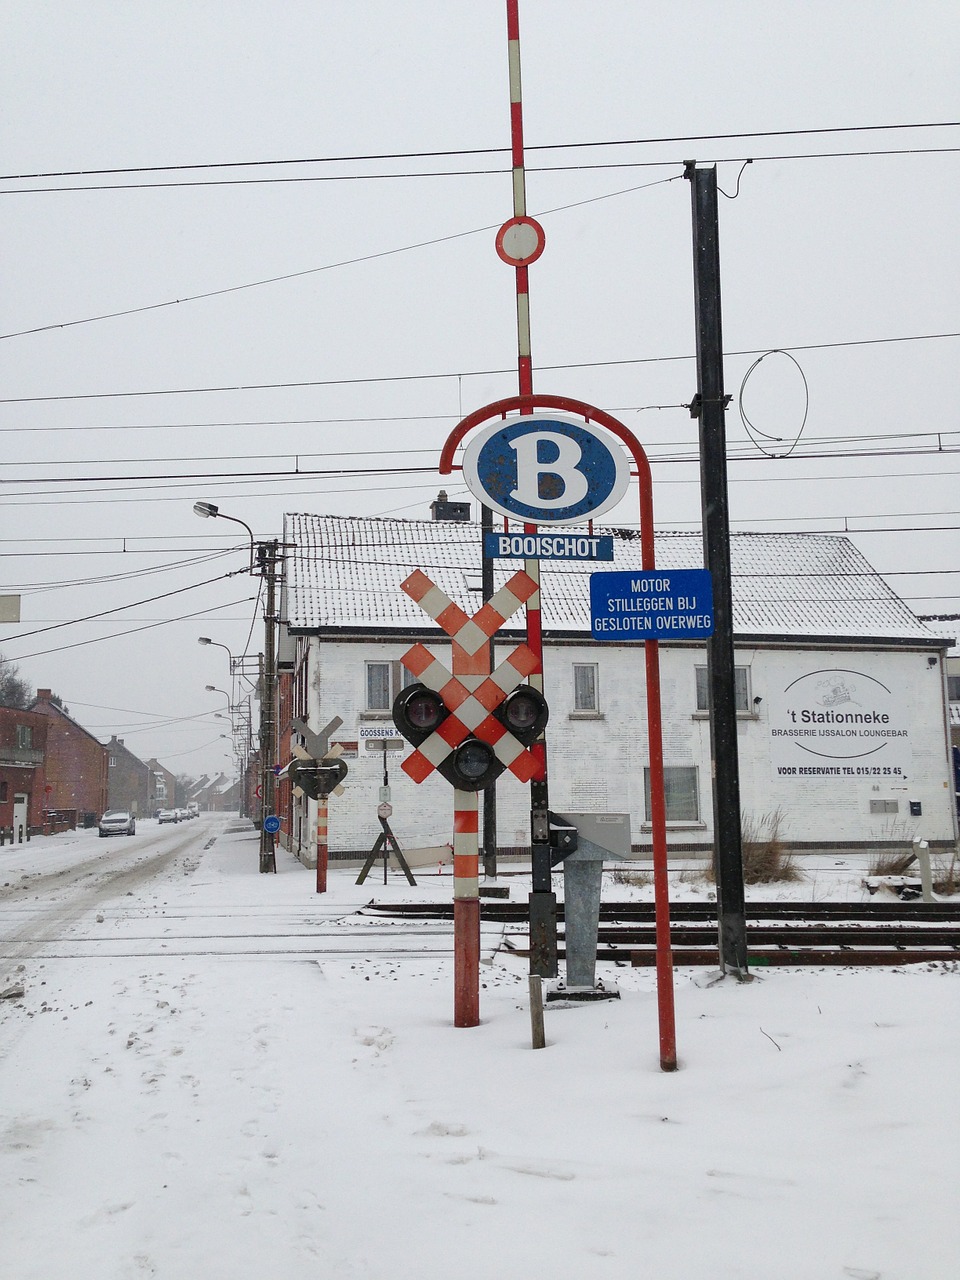 railway crossing booischot belgium free photo